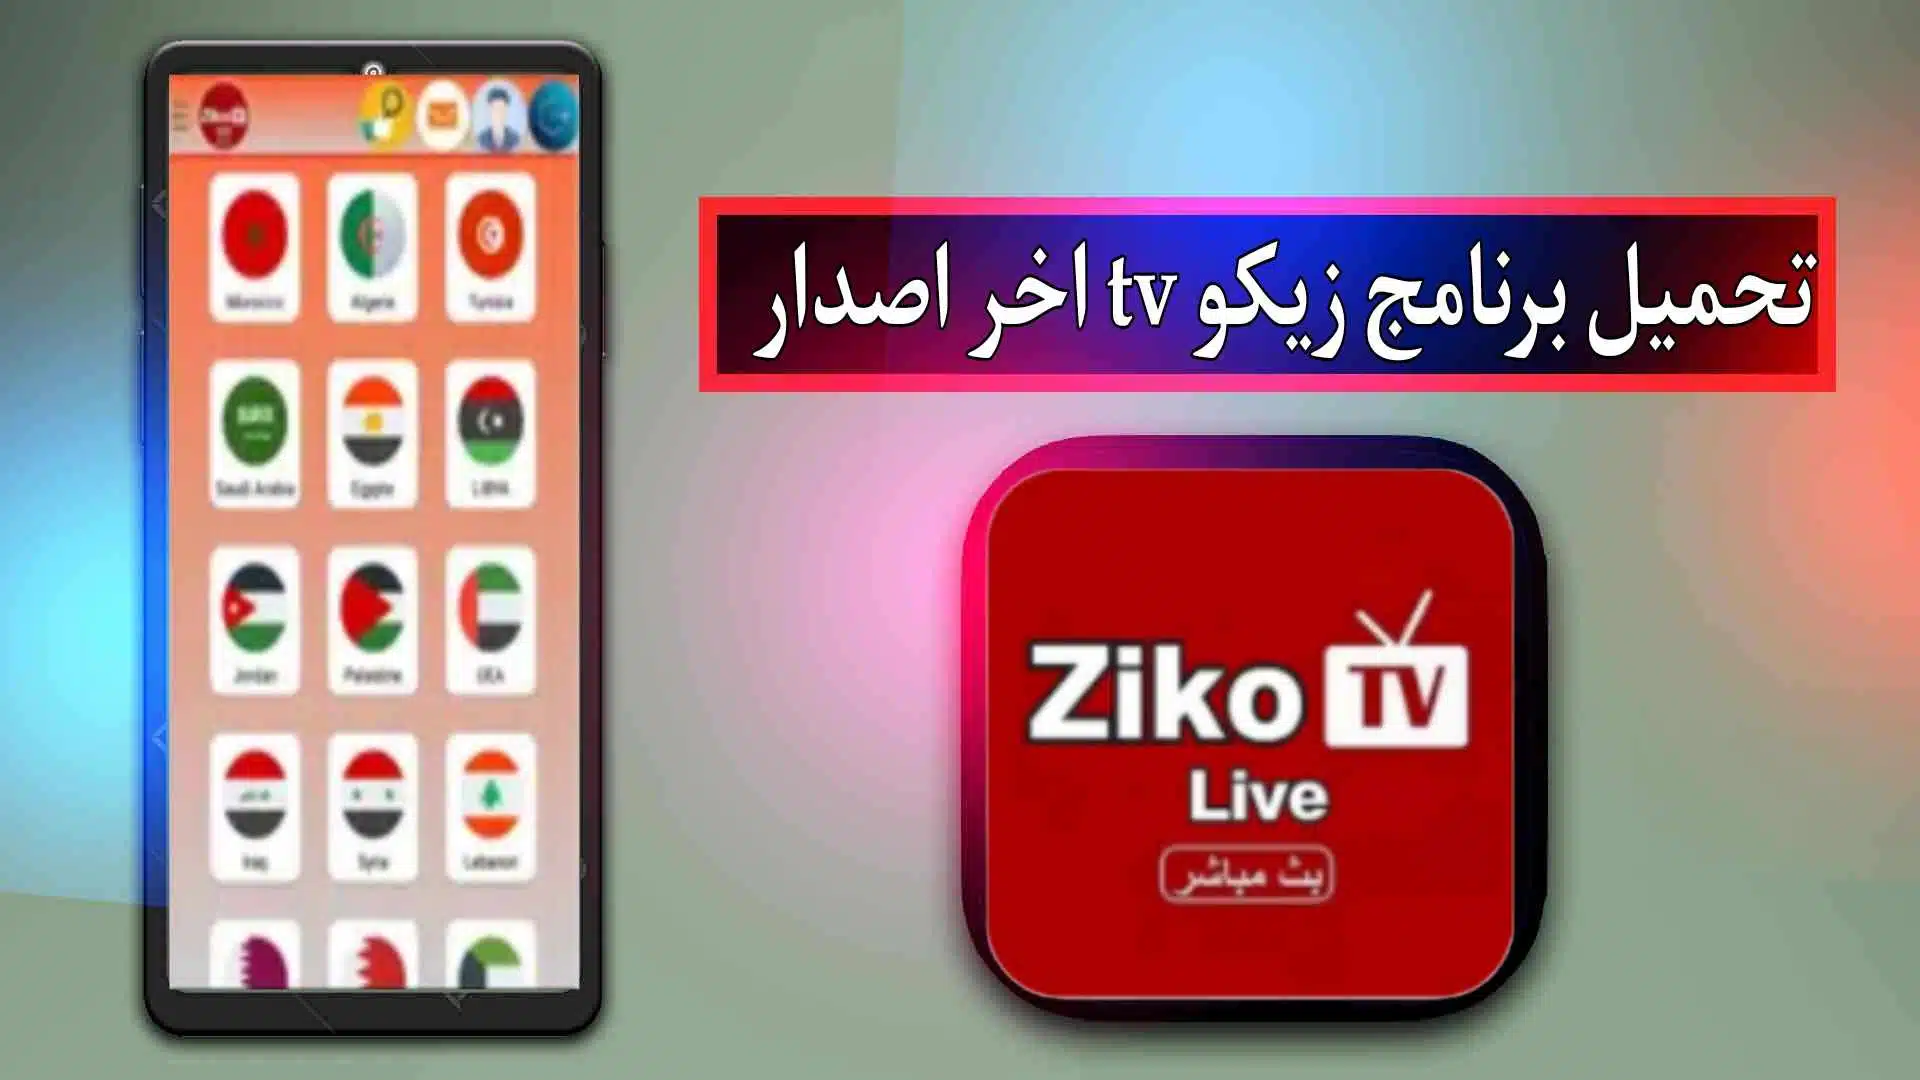 تحميل برنامج زيكو tv للاندرويد وللايفون اخر اصدار من ميديا فاير 1